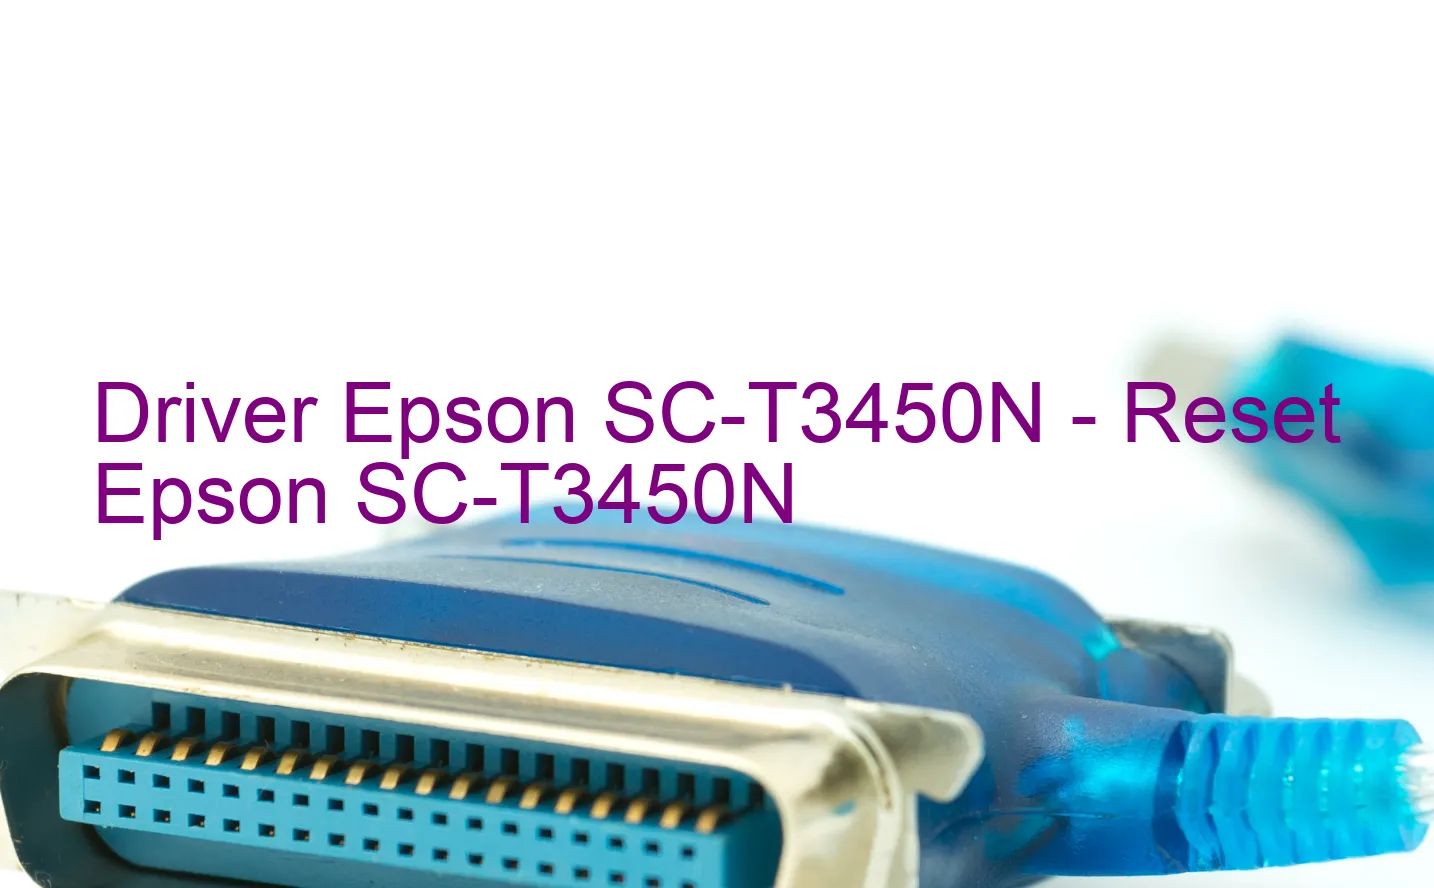 Epson SC-T3450Nのドライバー、Epson SC-T3450Nのリセットソフトウェア